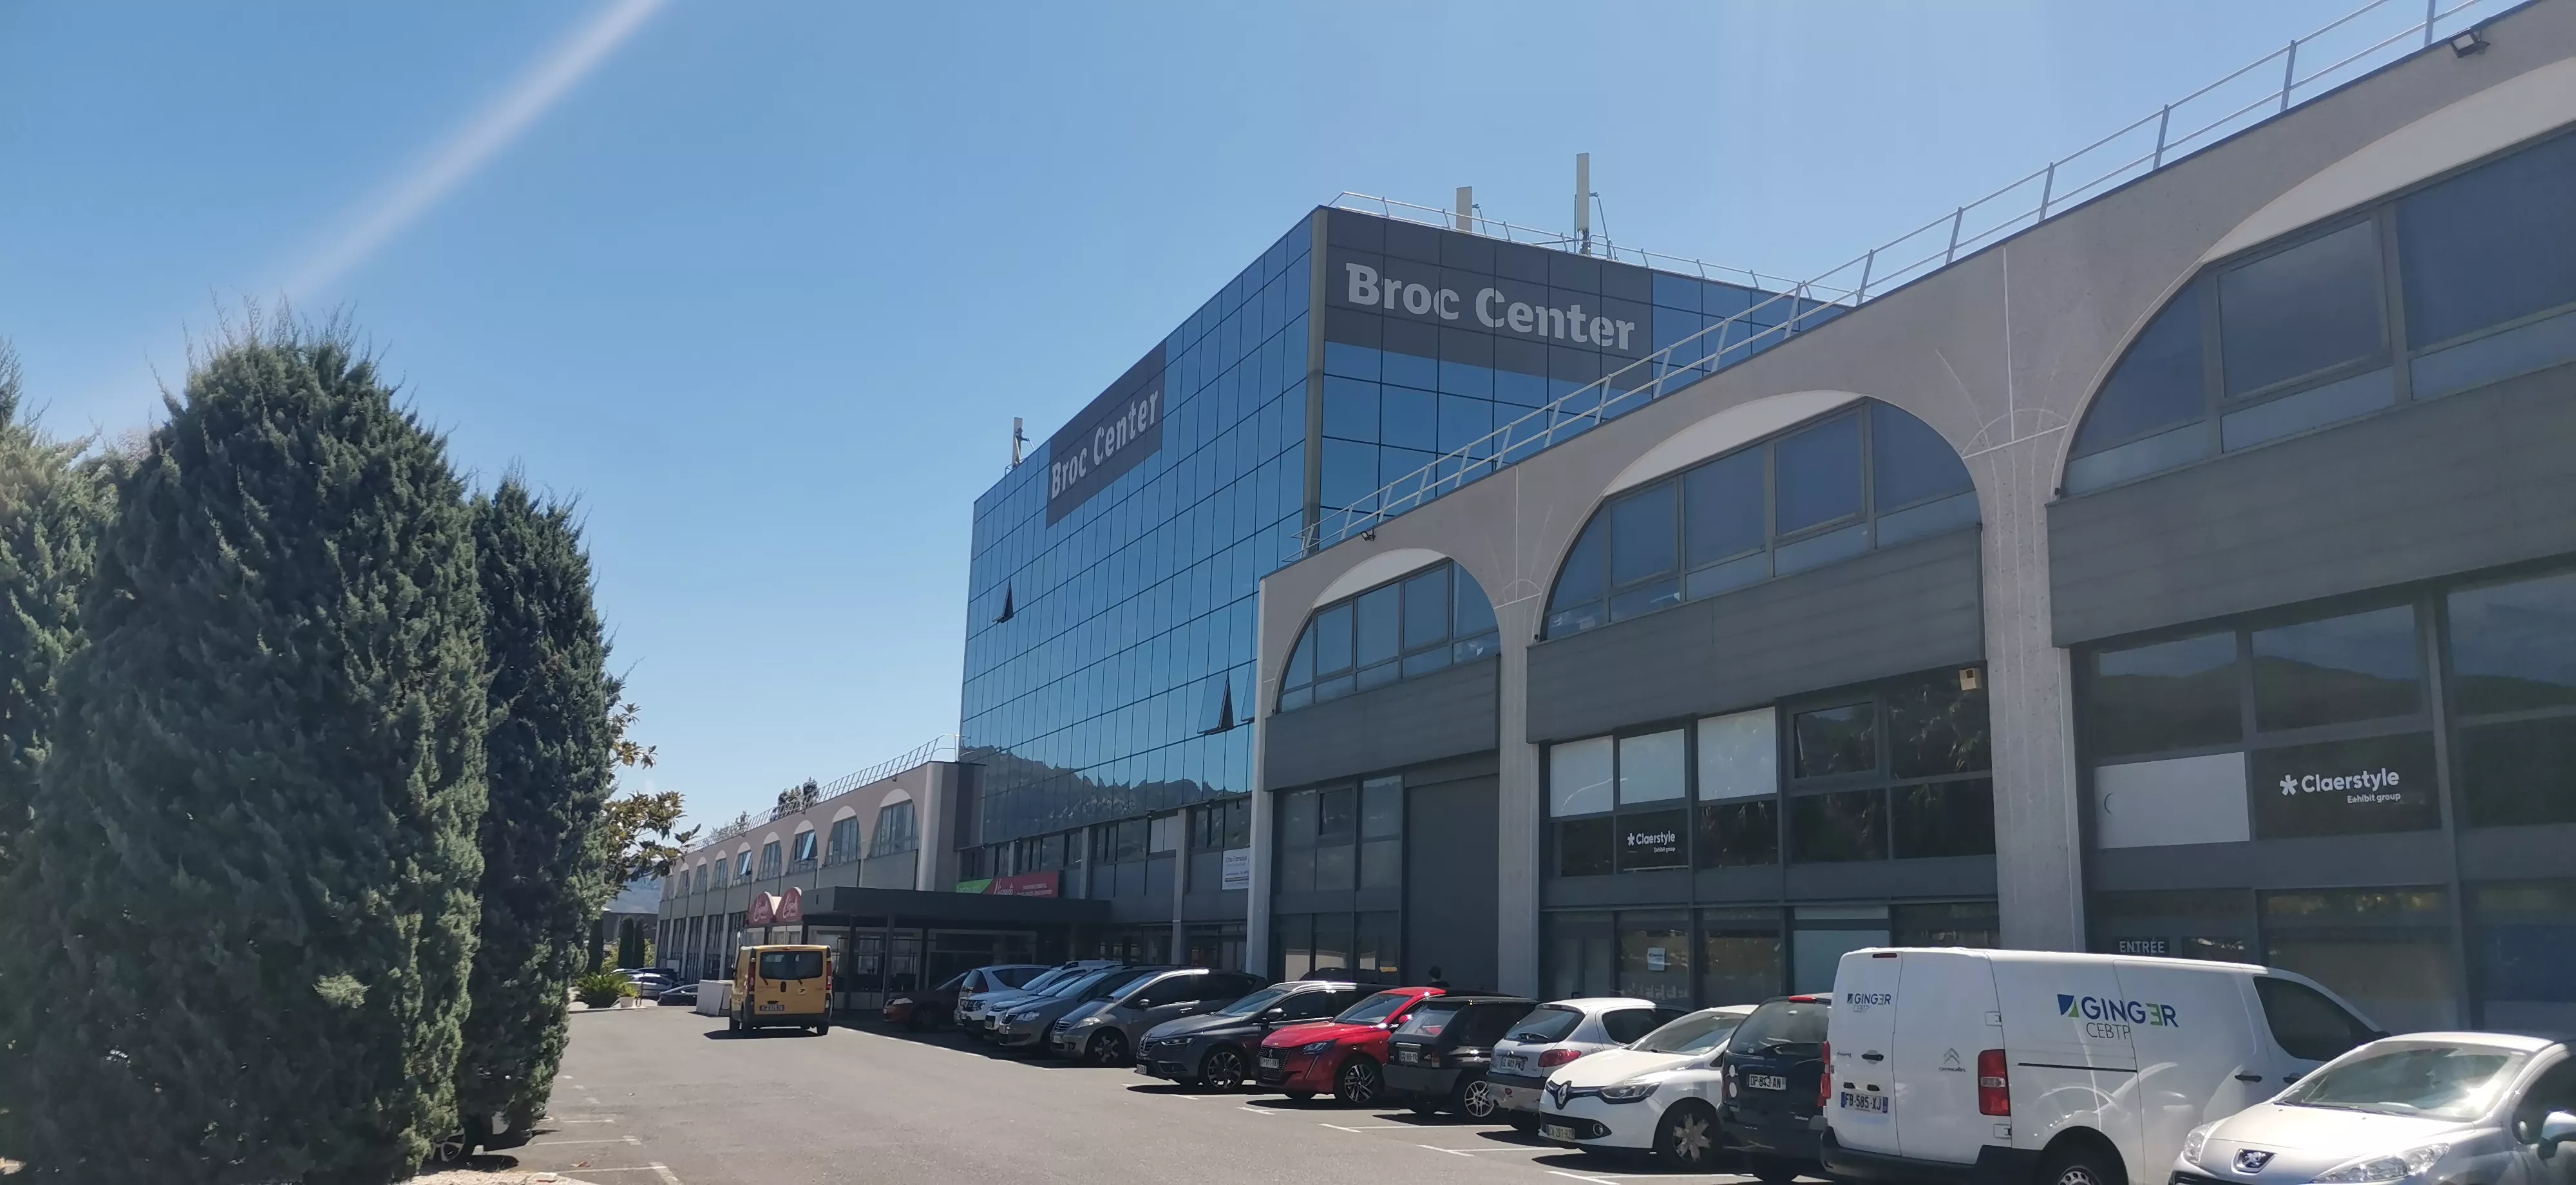 Locaux mixtes Immeuble Broc Center à Carros